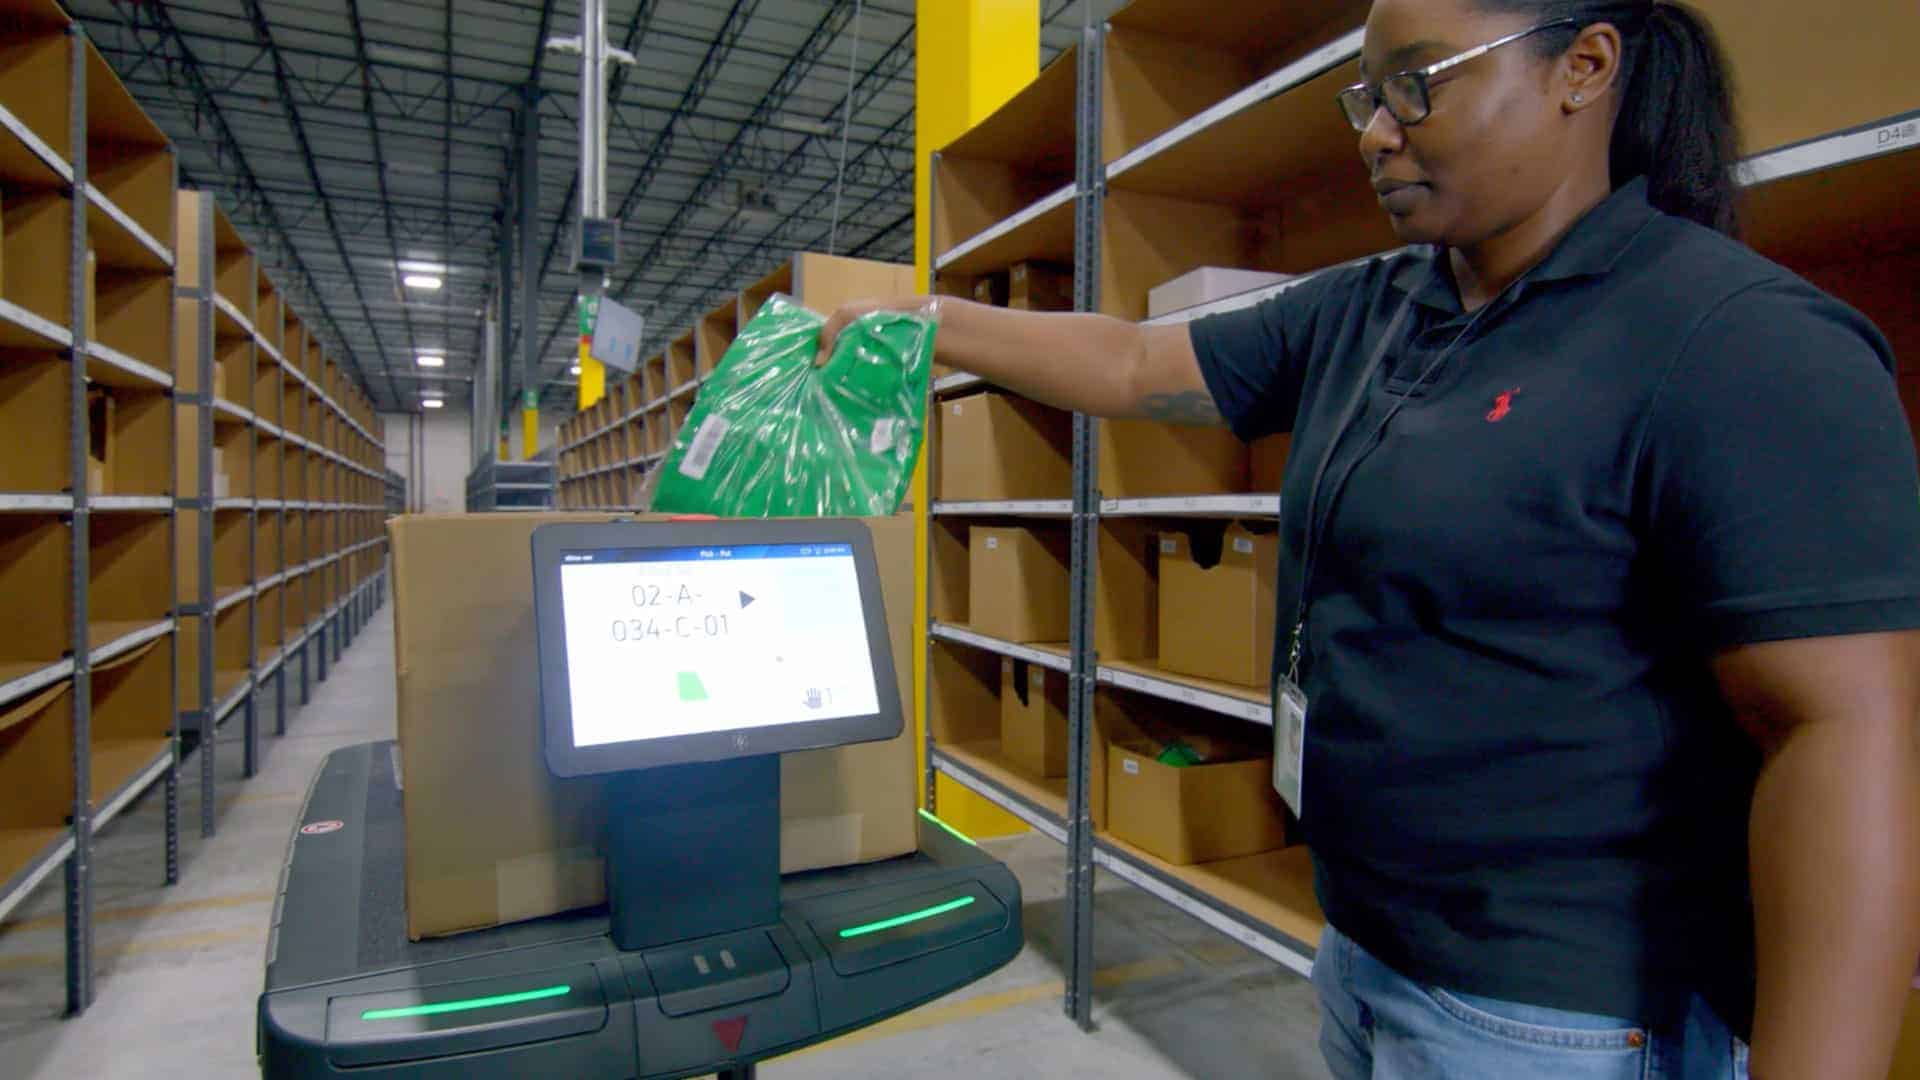 An associate places an item onto a warehouse robot